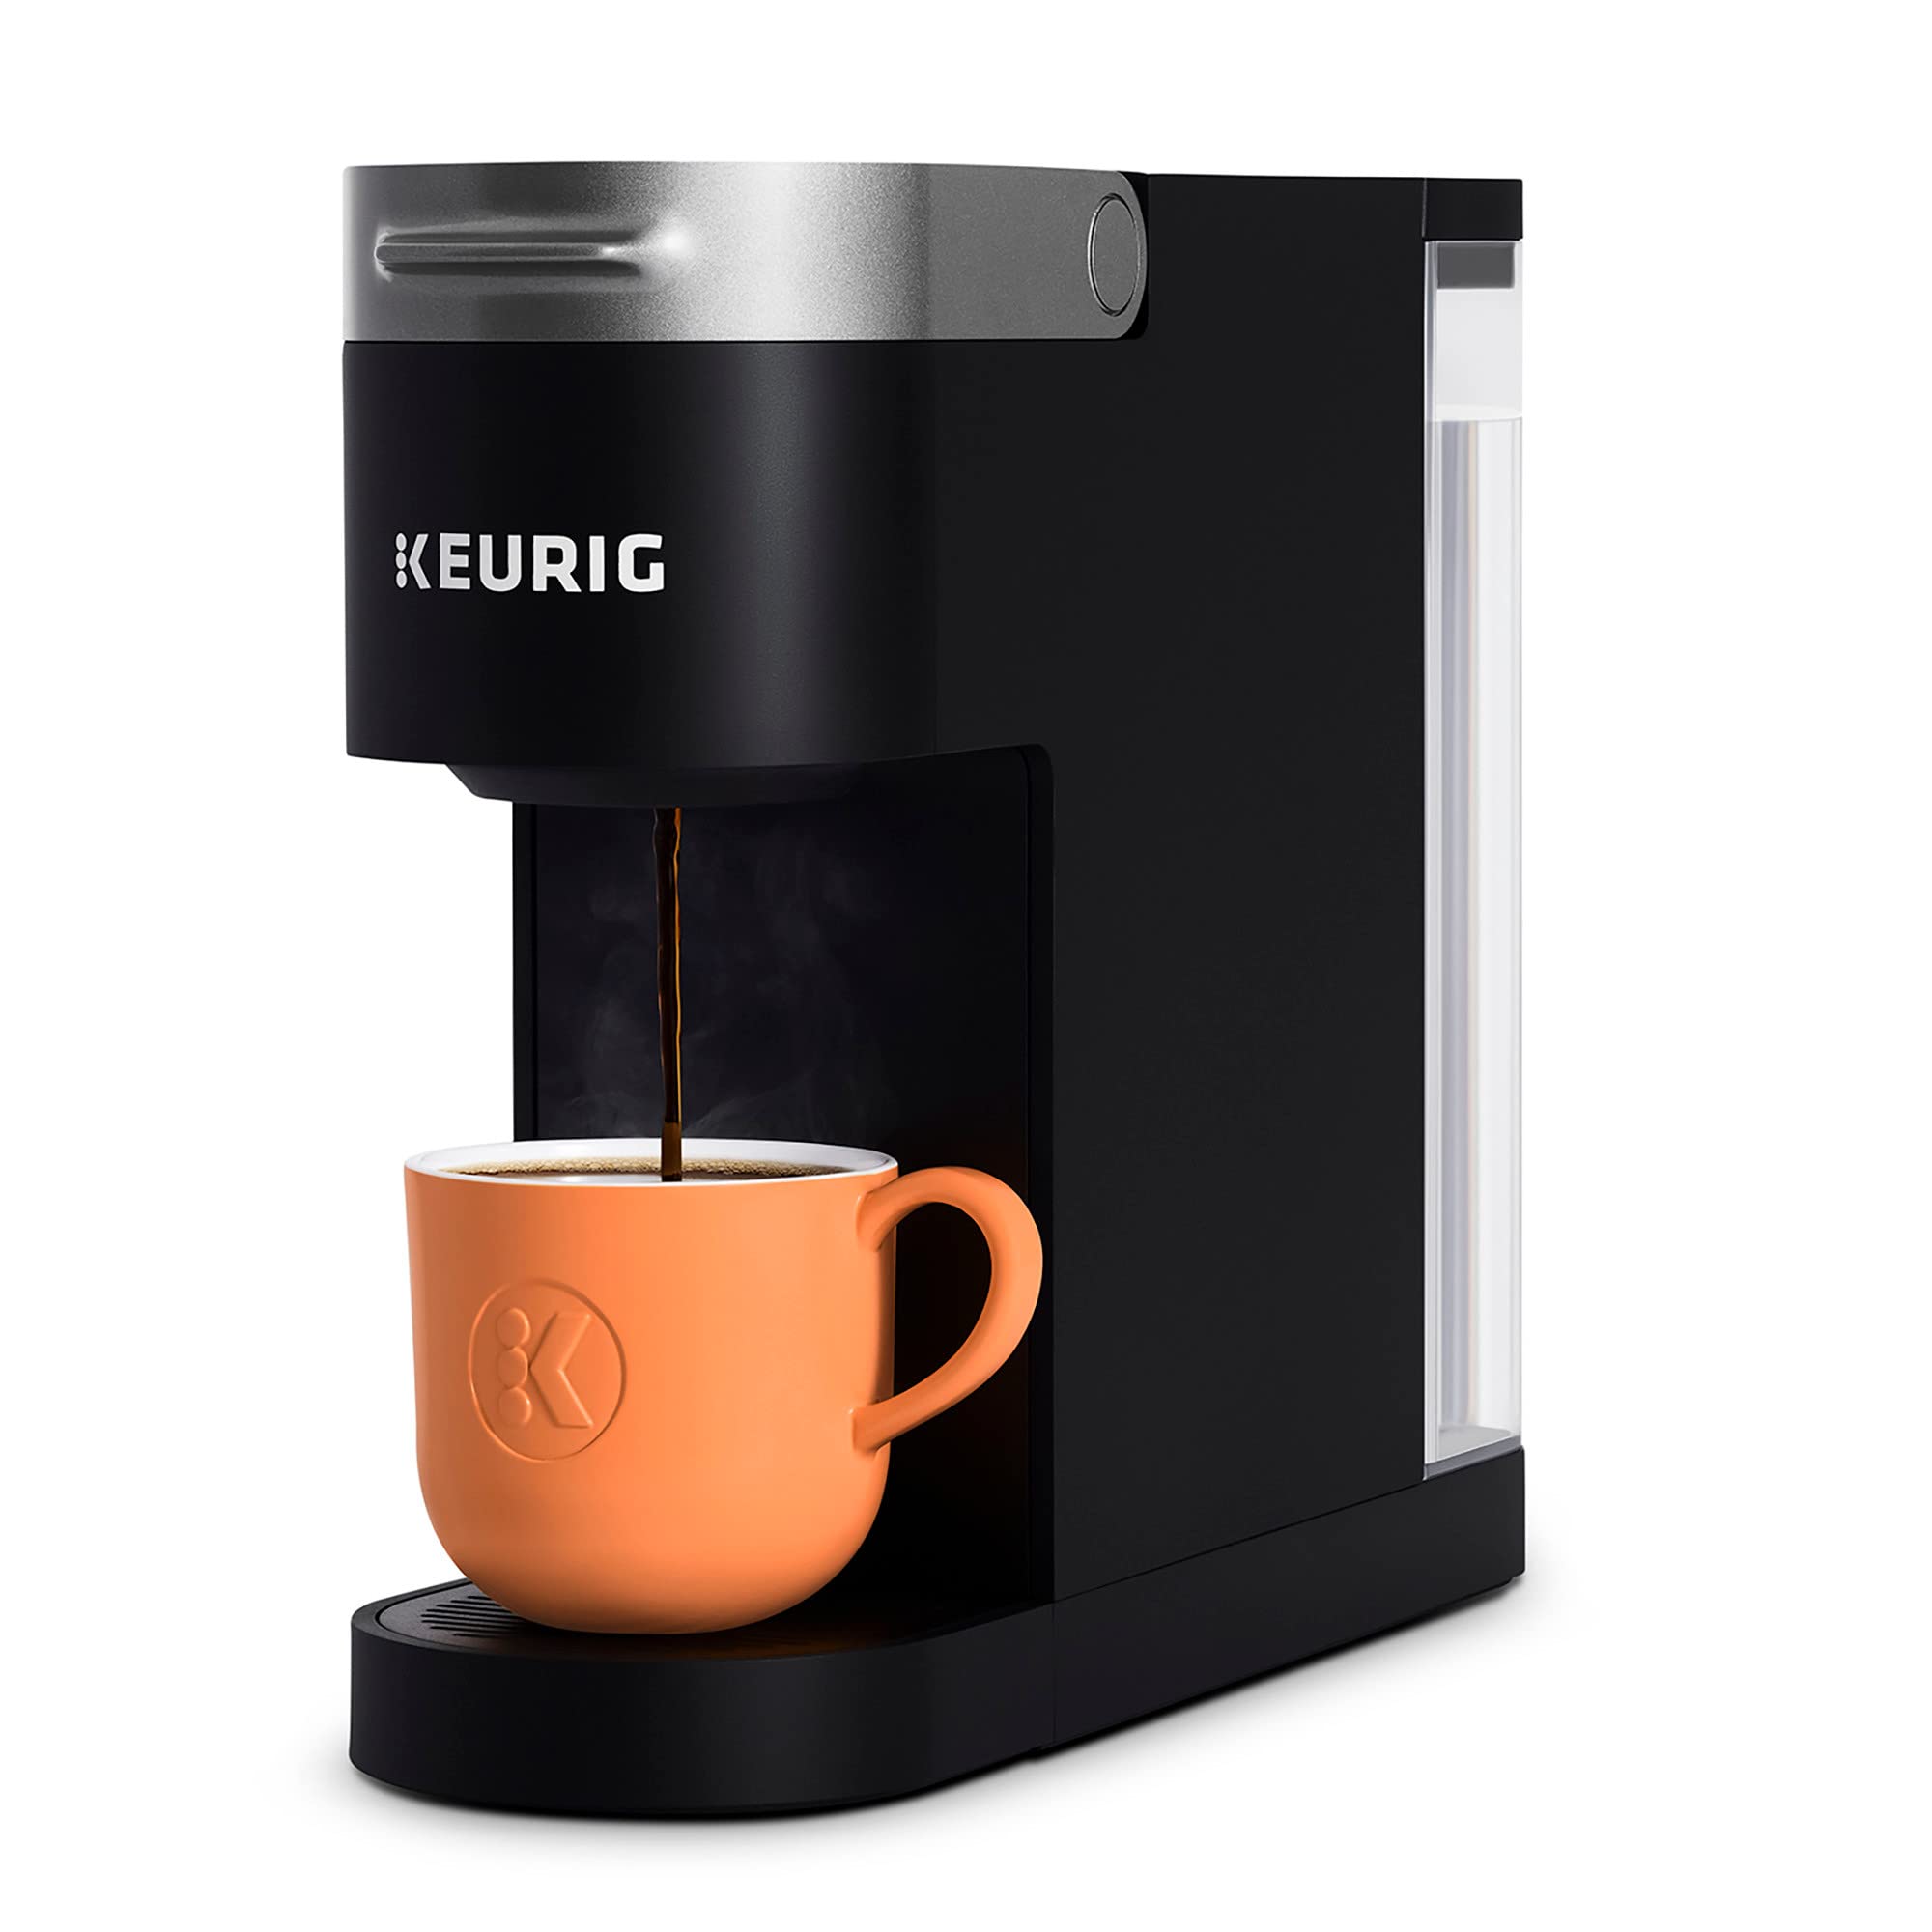 Keurig K-Slim капсульная кофеварка K-Cup на одну порцию